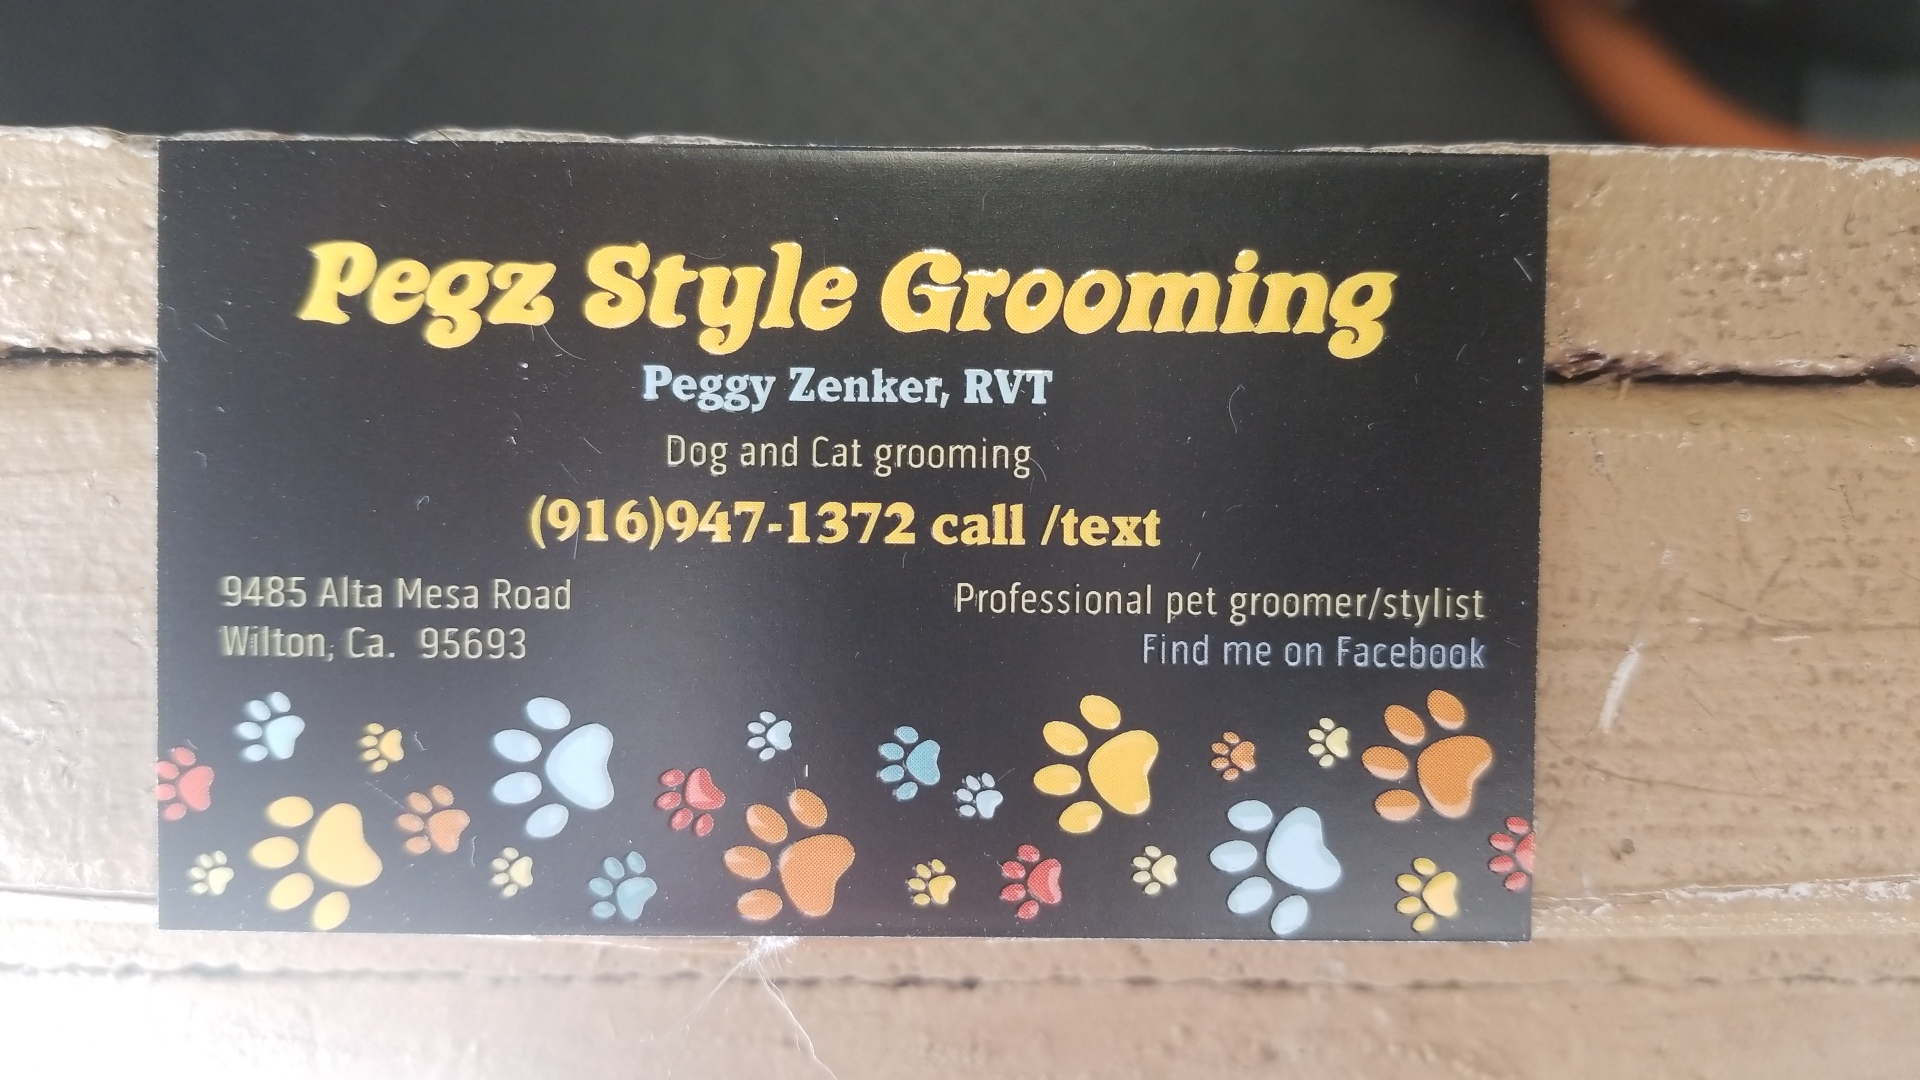 Pegz Style Grooming